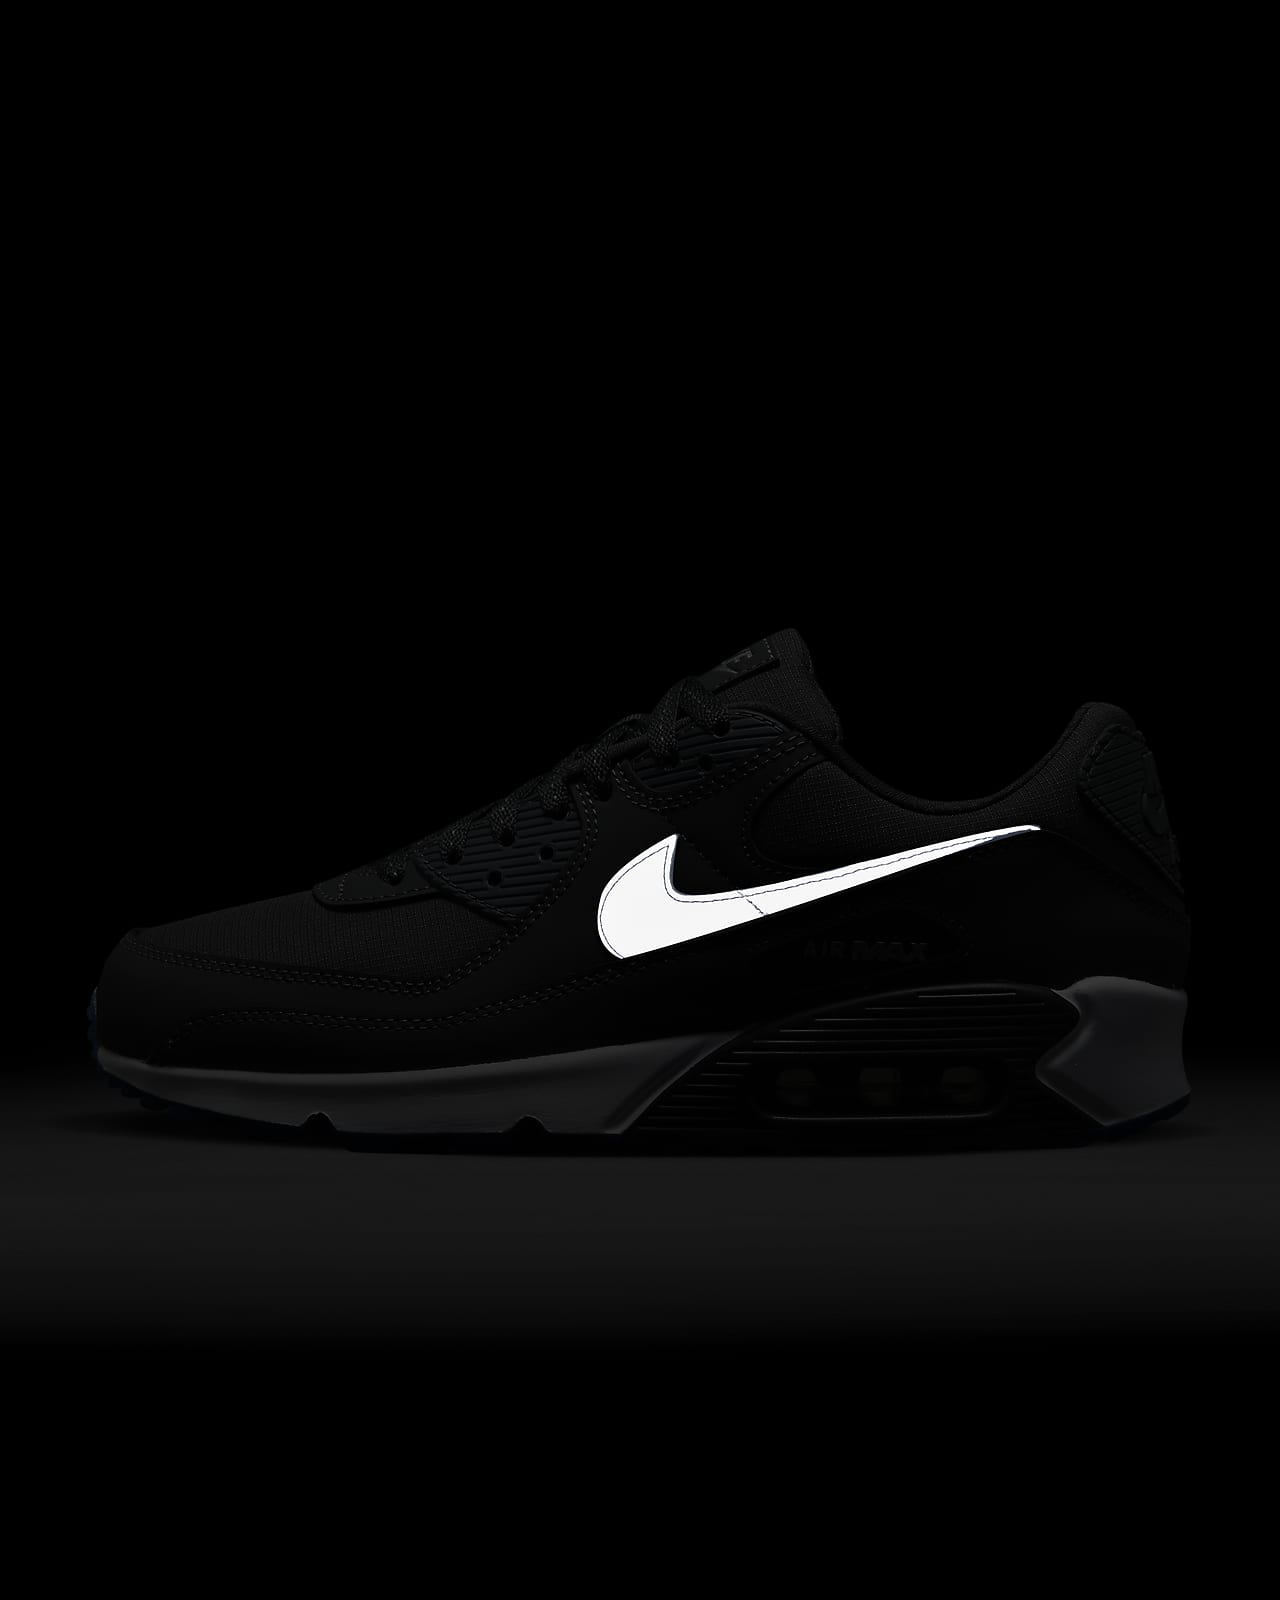 BEST ALL BLACK AIR MAX? Nike Air Max 90 Triple Black On Feet